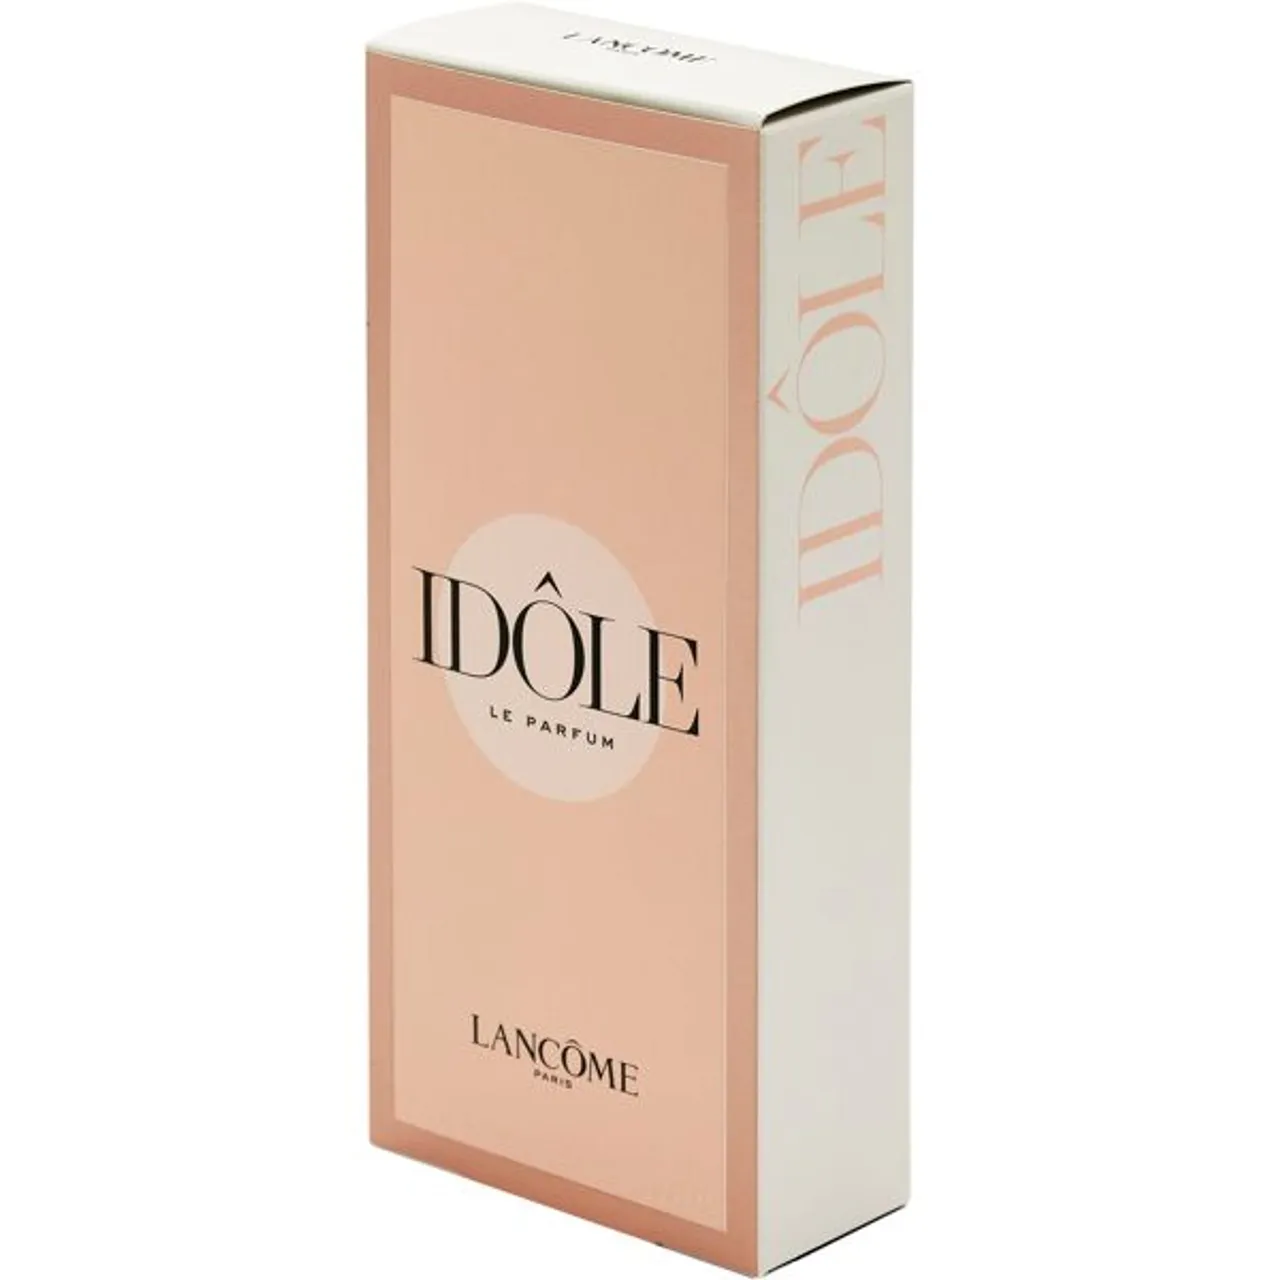 Eau de Parfum LANCOME "Idôle" Parfüms Gr. 50 ml, farblos (transparent) Damen Eau de Parfum